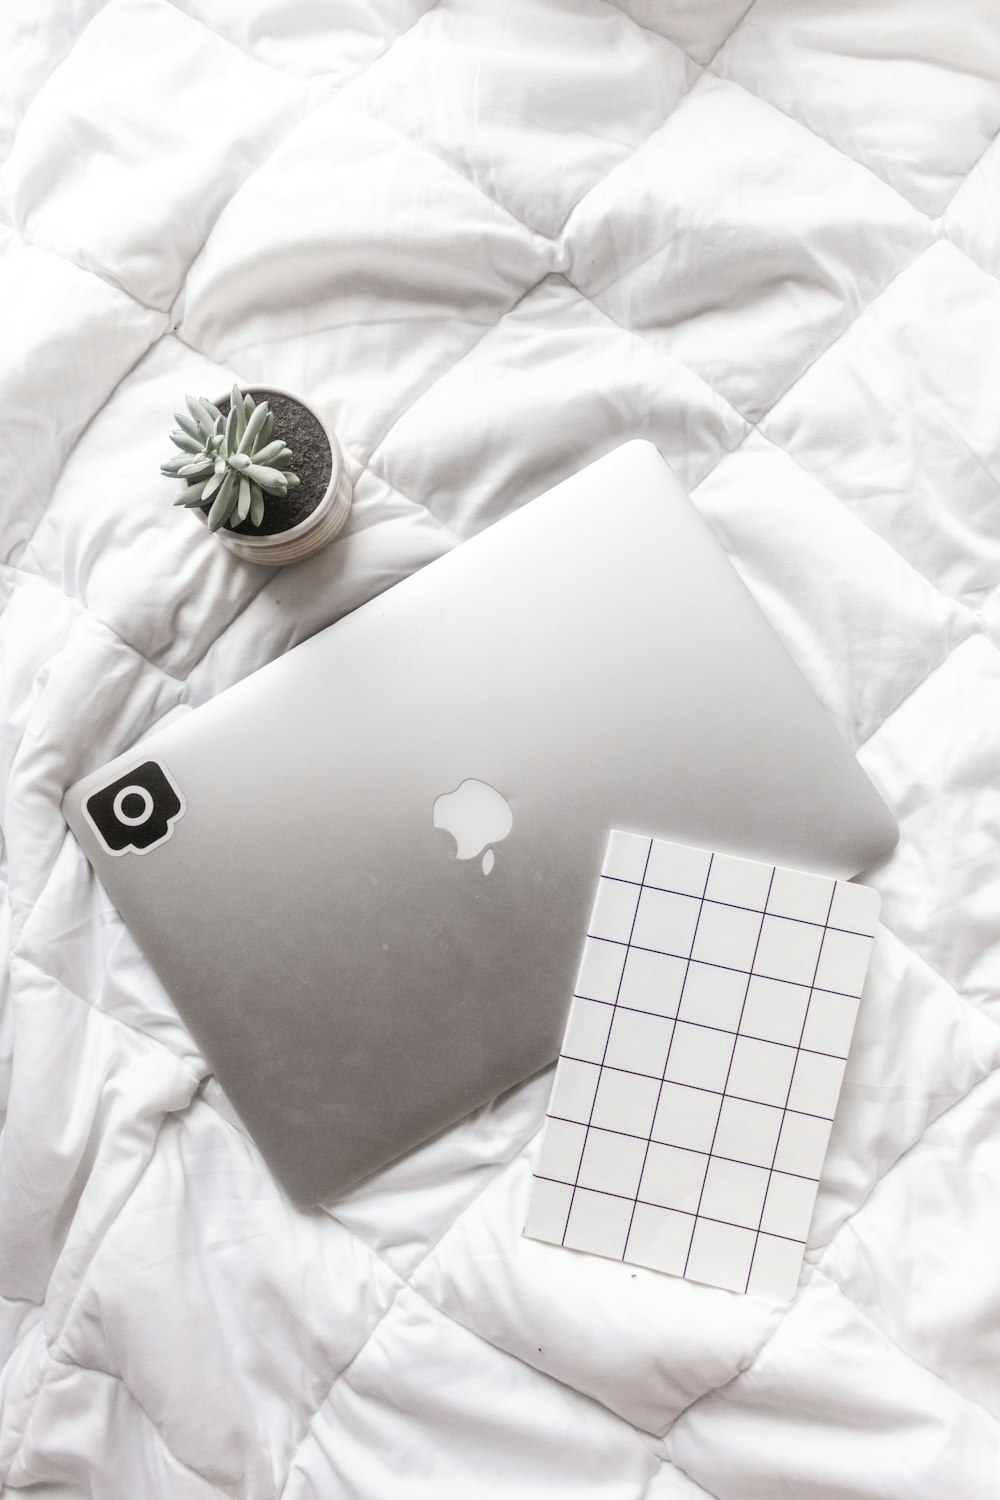 MacBook argento su tessuto floreale bianco e grigio